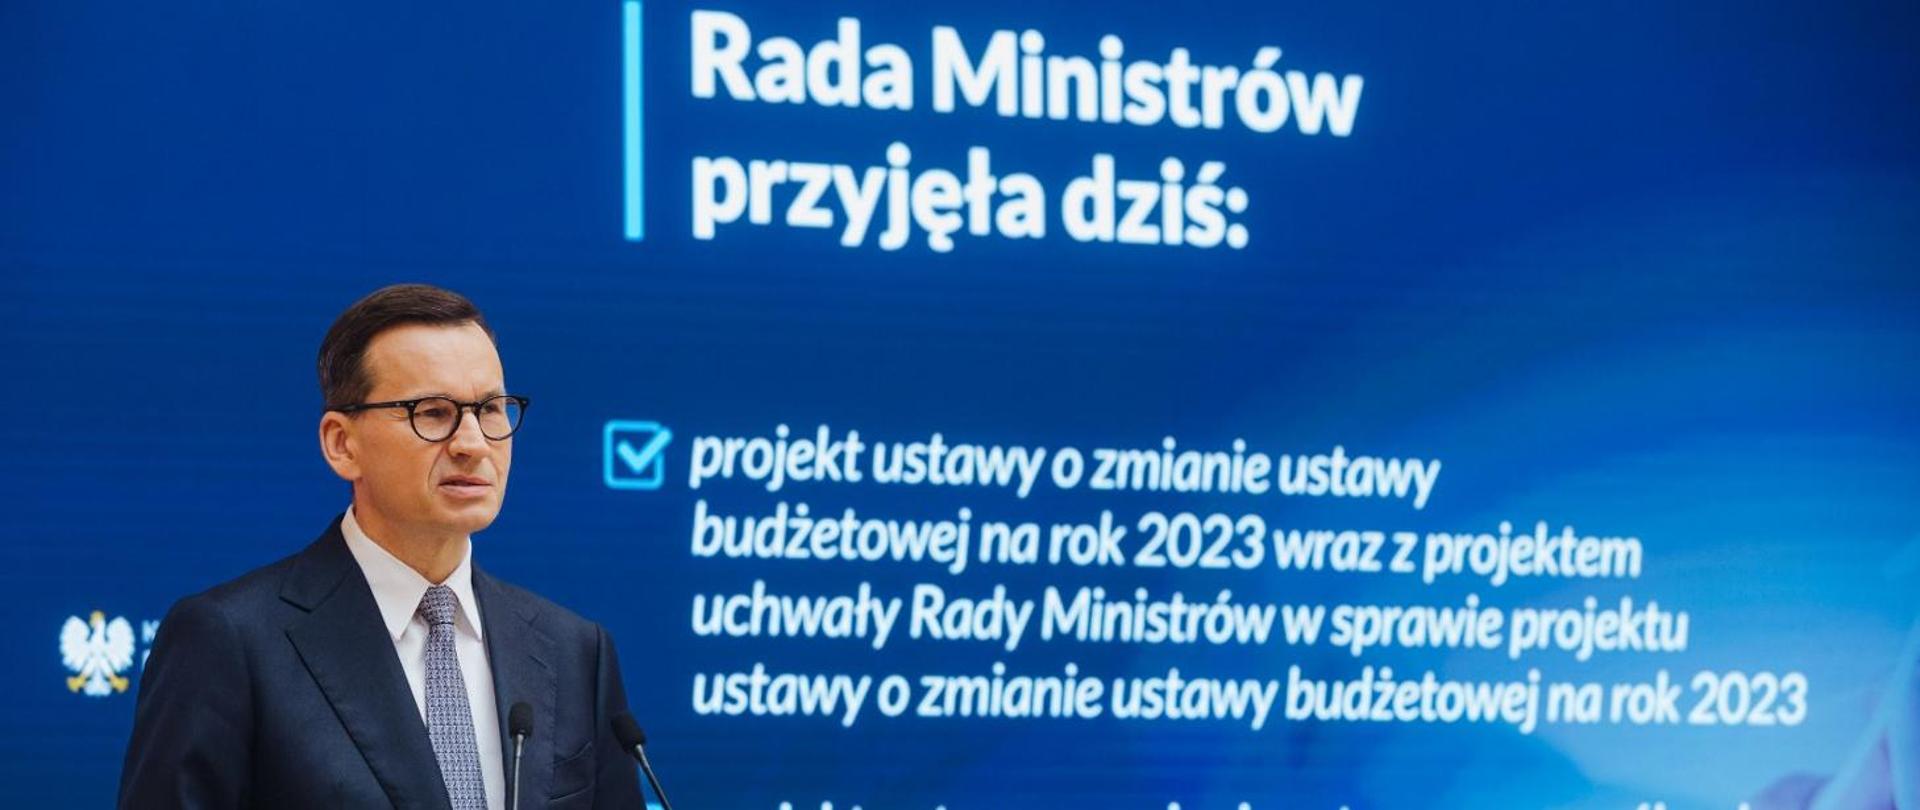 premier Mateusz Morawiecki na niebieskim tle z białymi napisami 